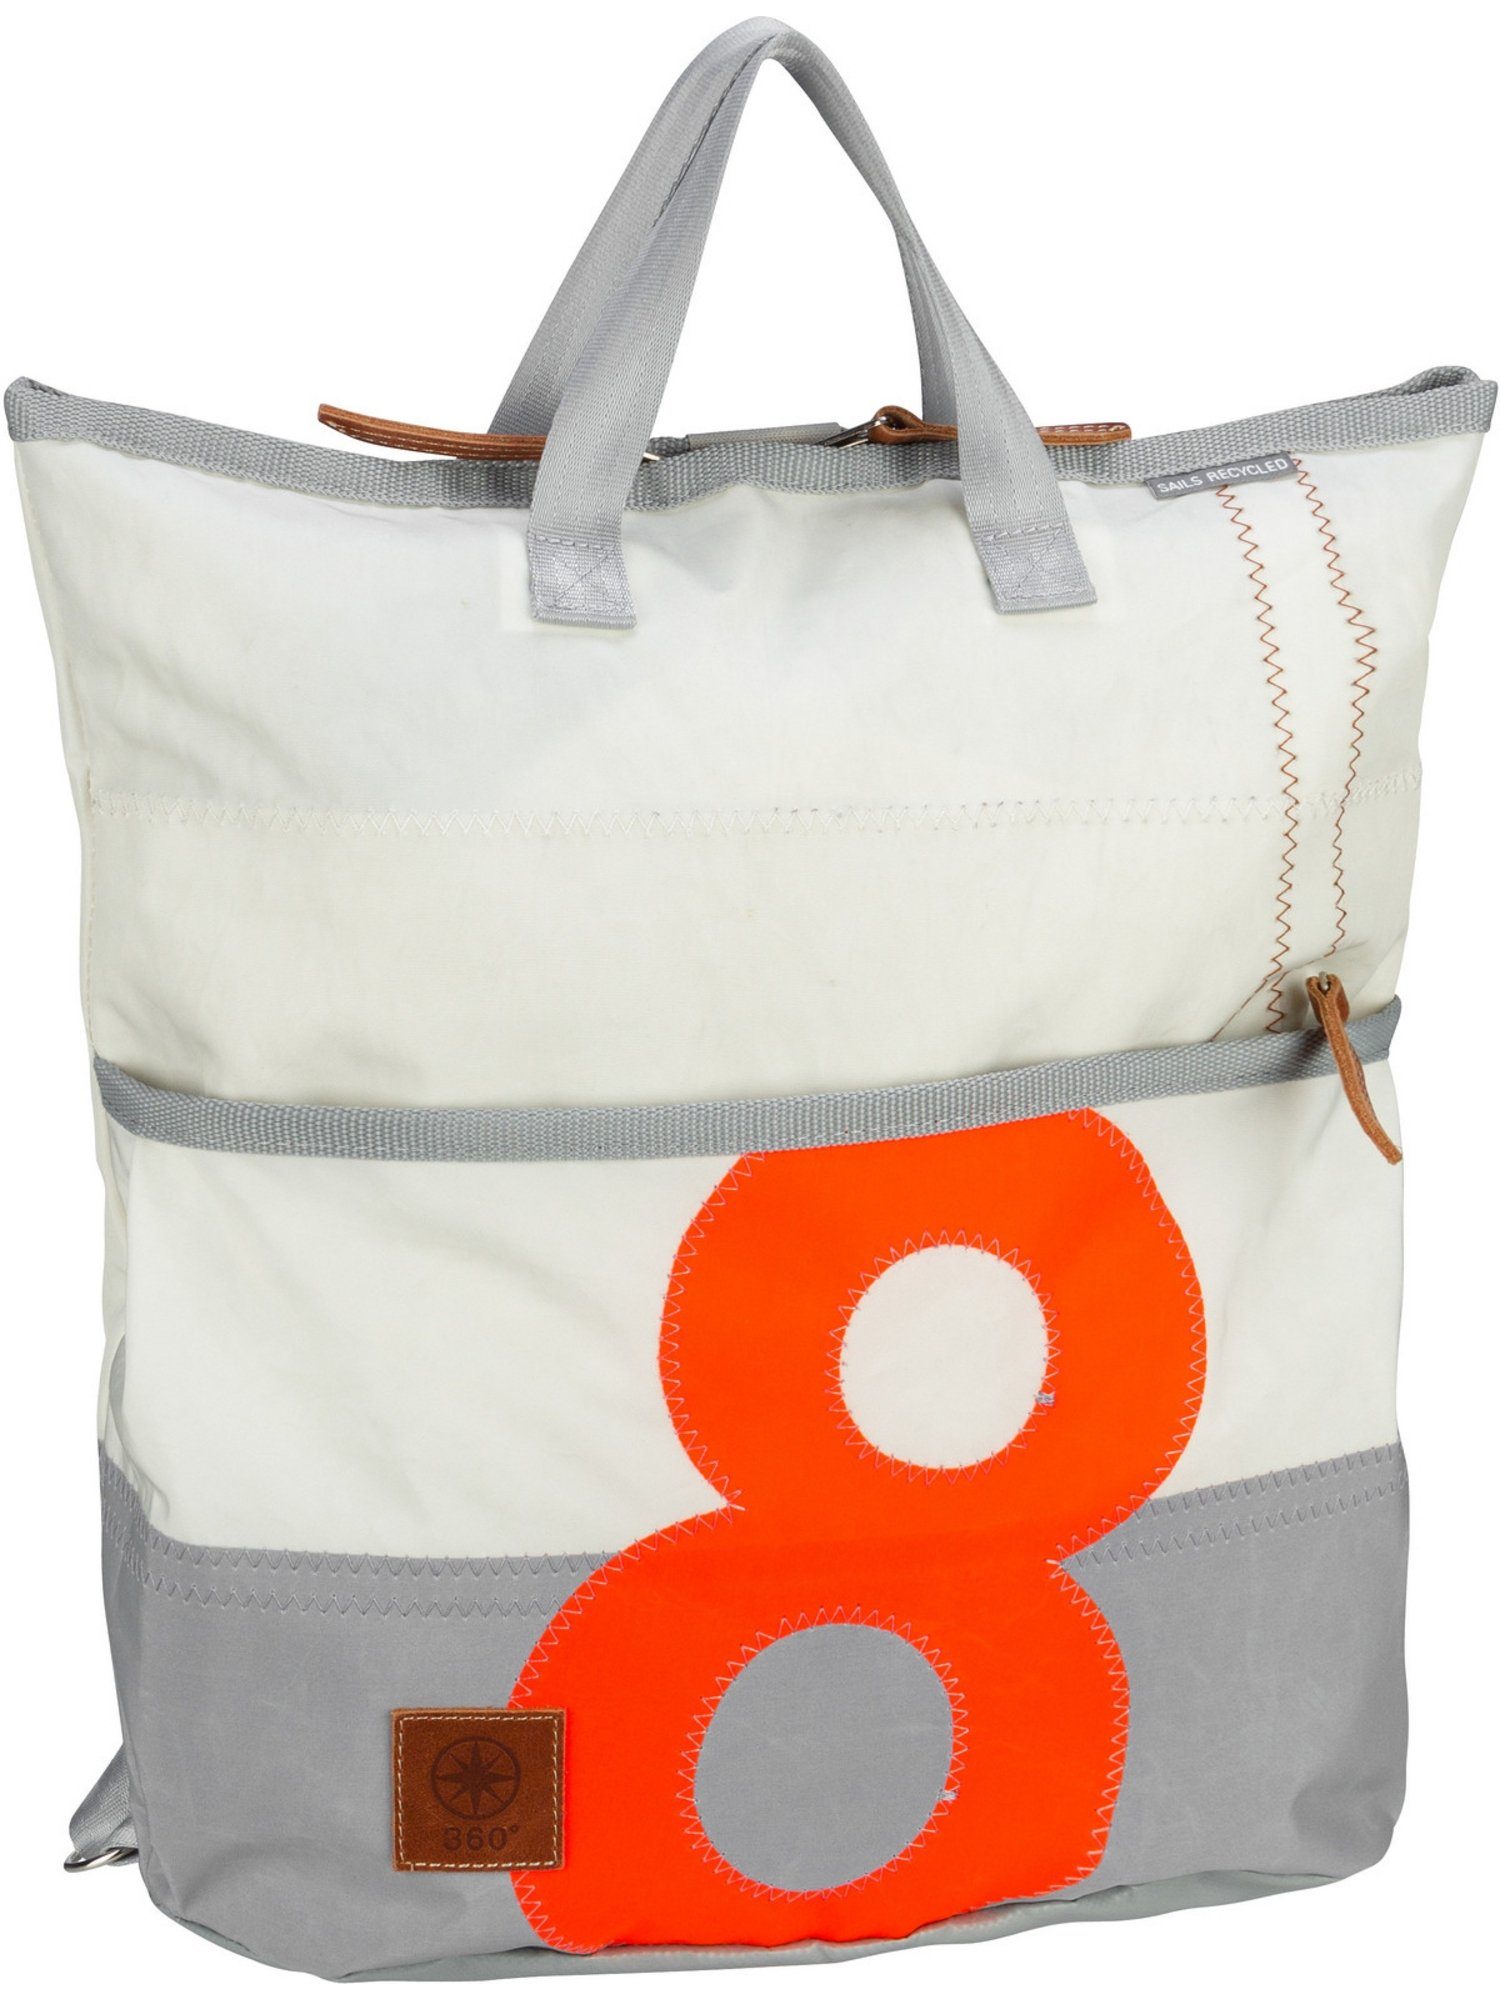 360Grad Rucksack Weiß/Grau oranger Zahl mit Ketsch Mini